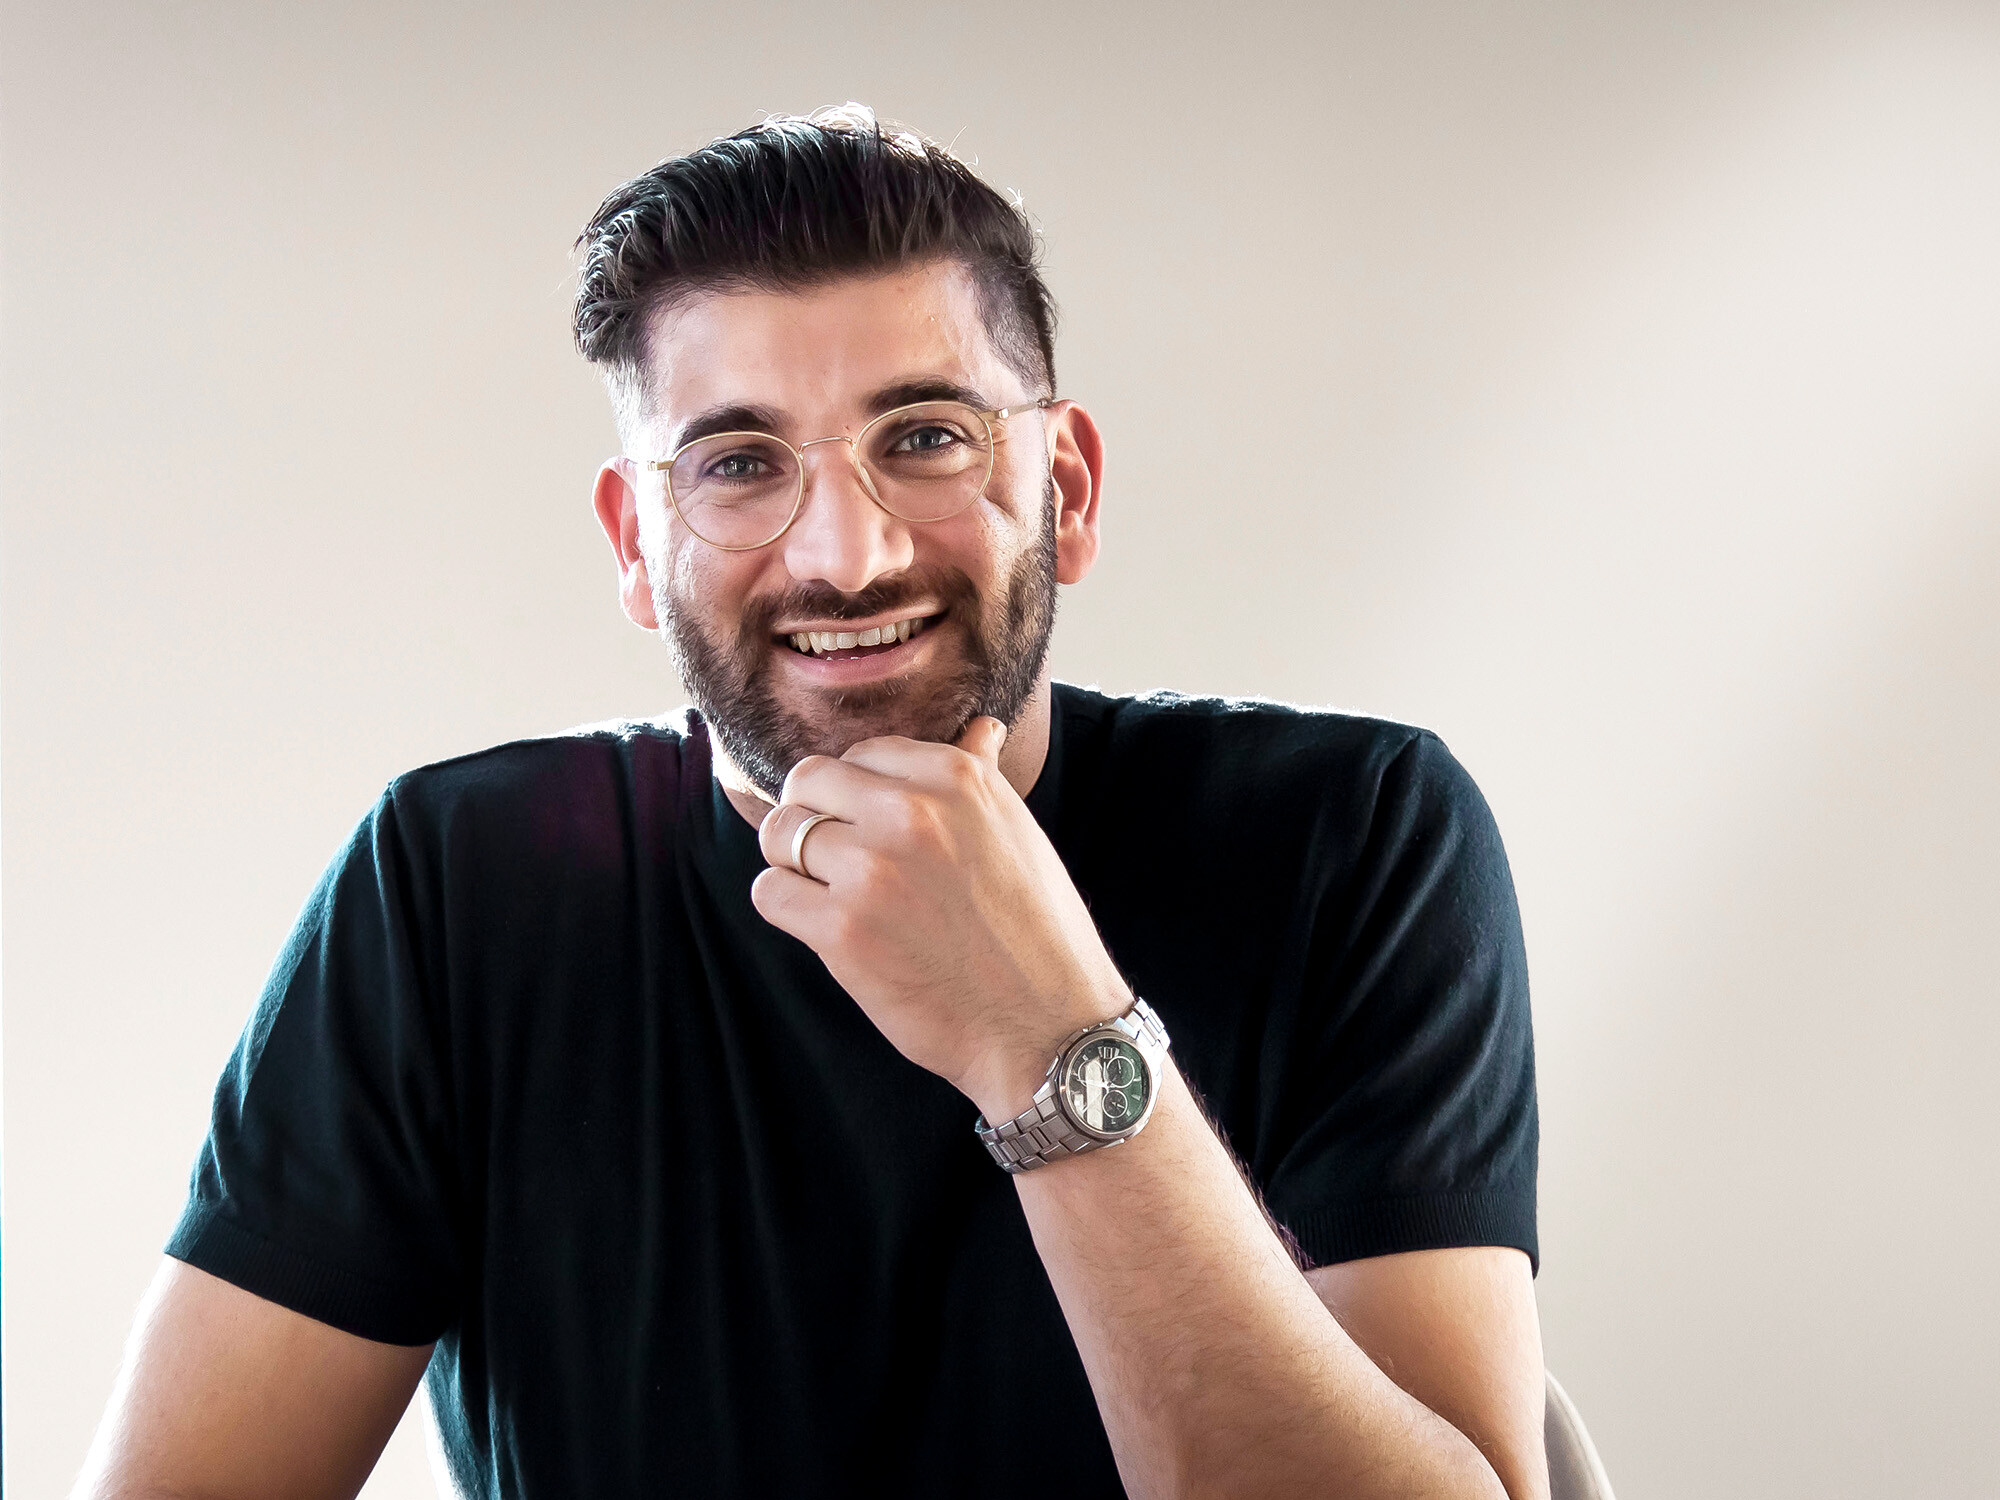 Lächelnder Architekt Hoeshmand Mahmoed von HMVD Architecten, sein Kinn auf der linken Hand abgestützt.